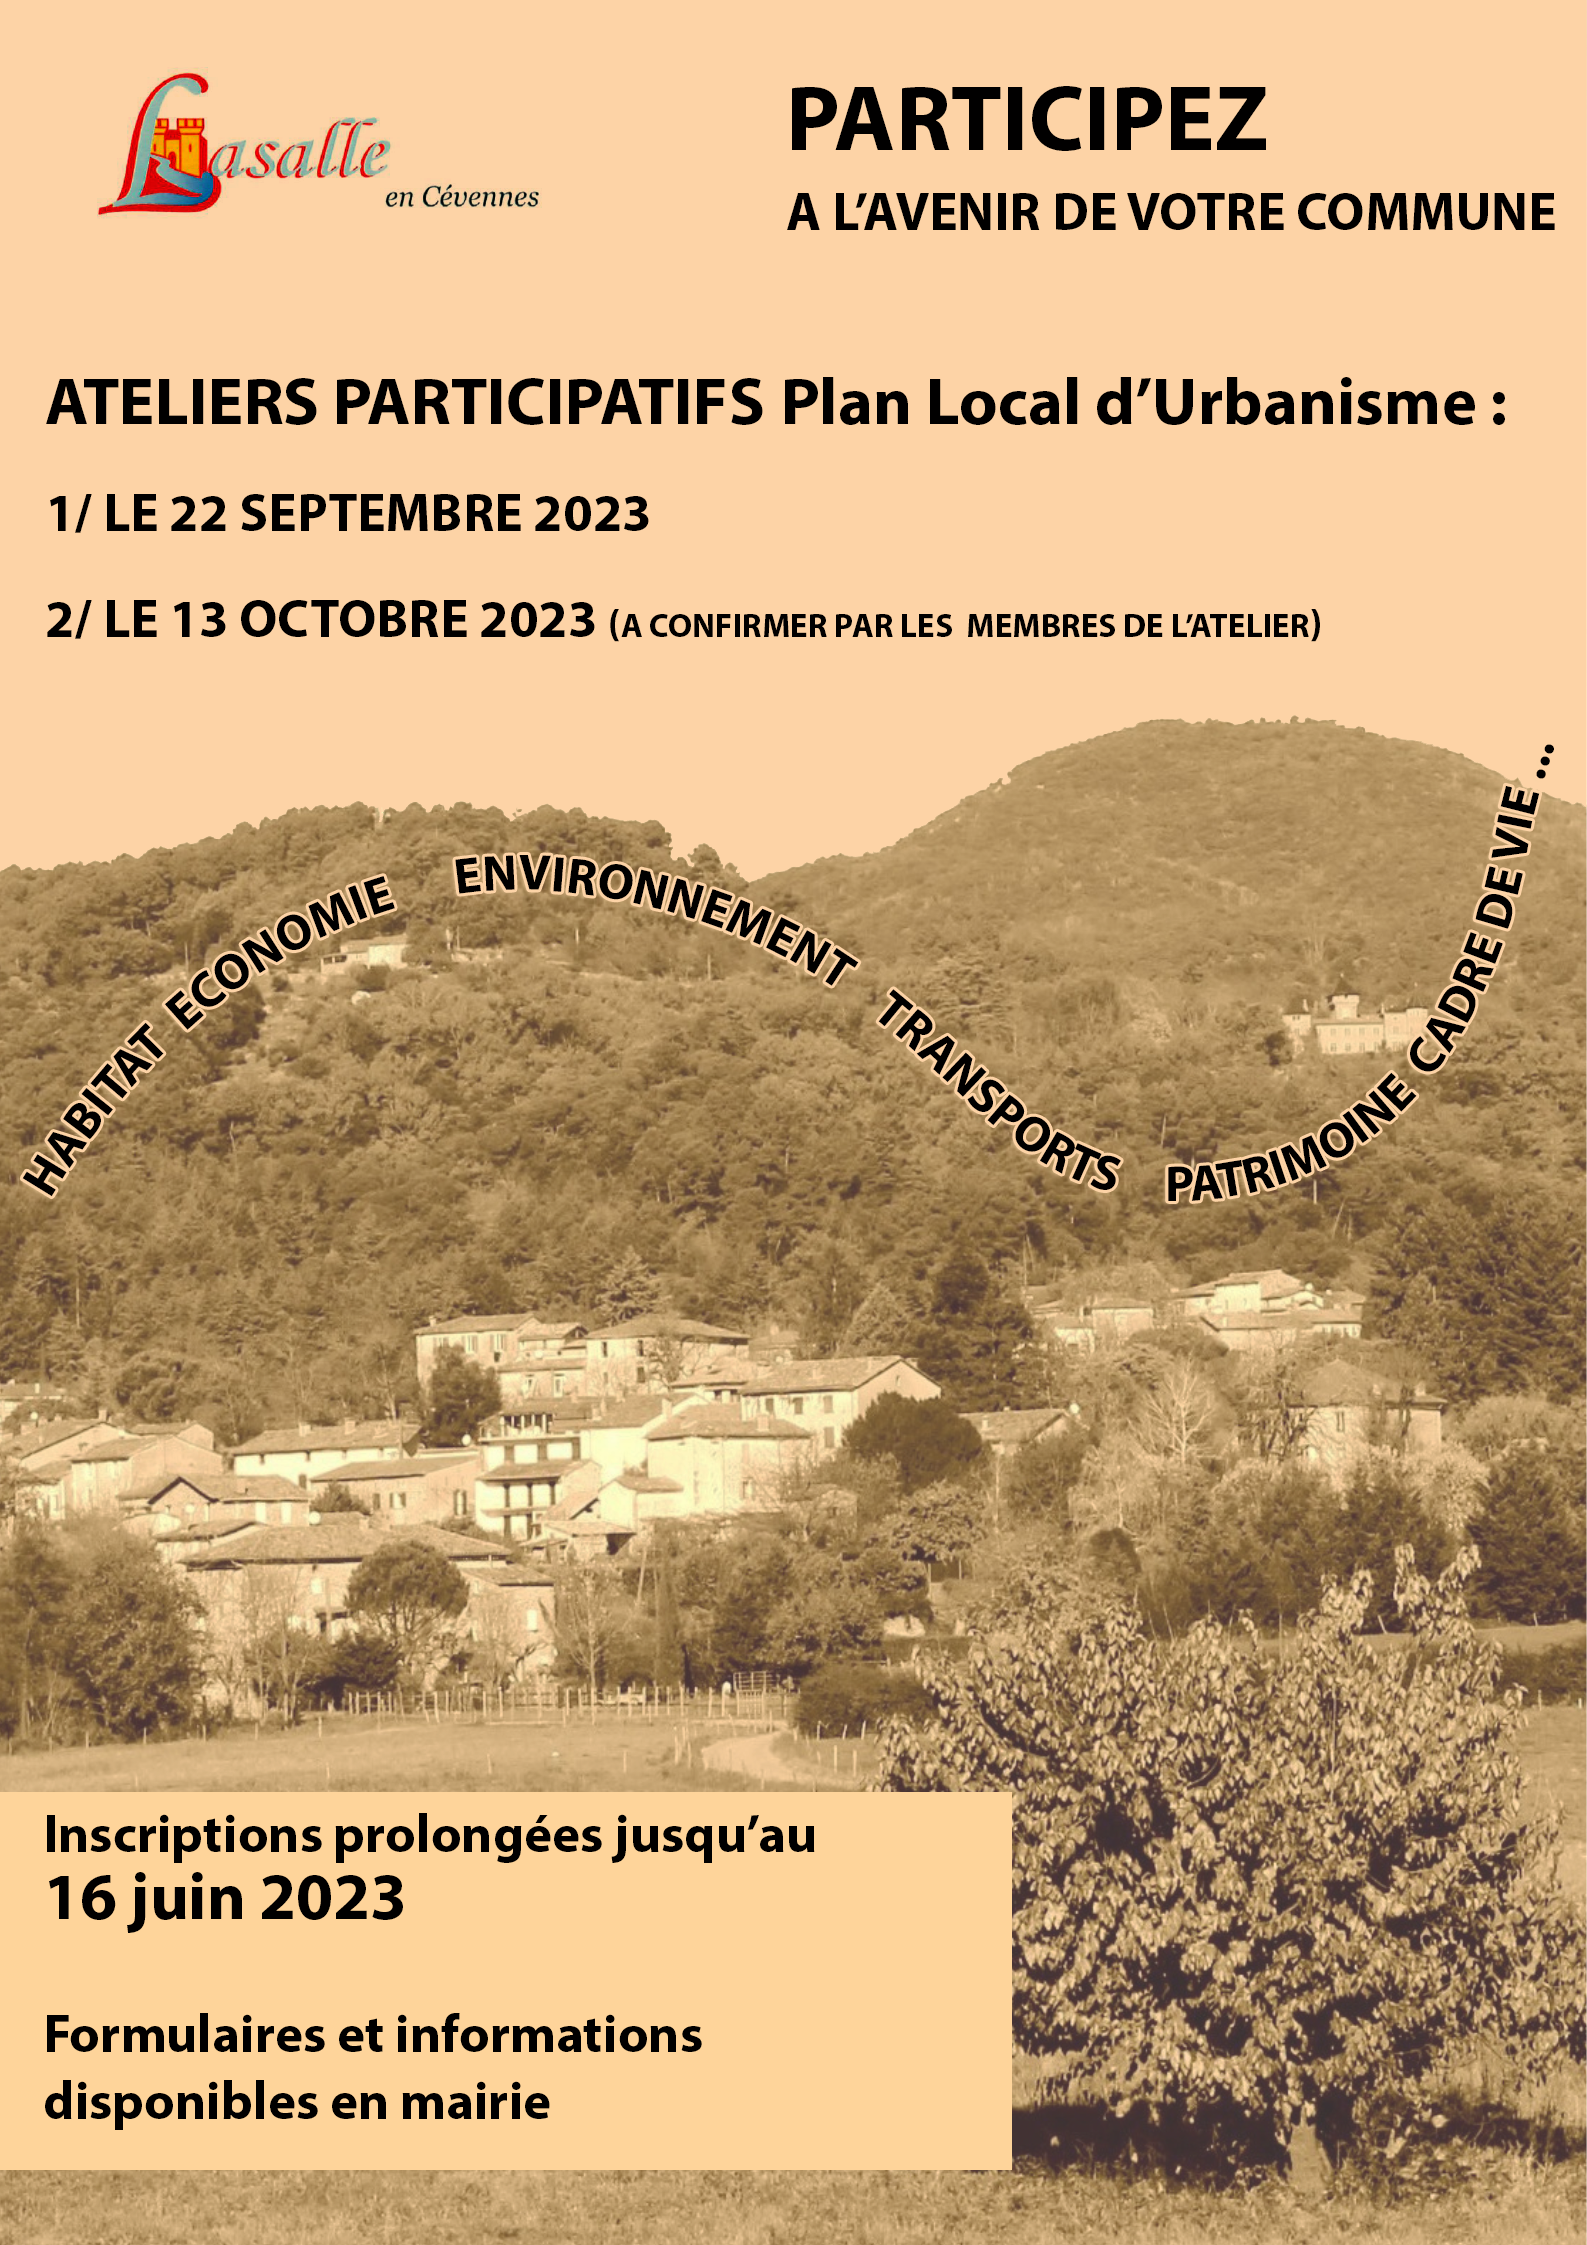 Participez à l’avenir de la commune en vous inscrivant aux ateliers participatifs autour du Plan Local d’Urbanisme